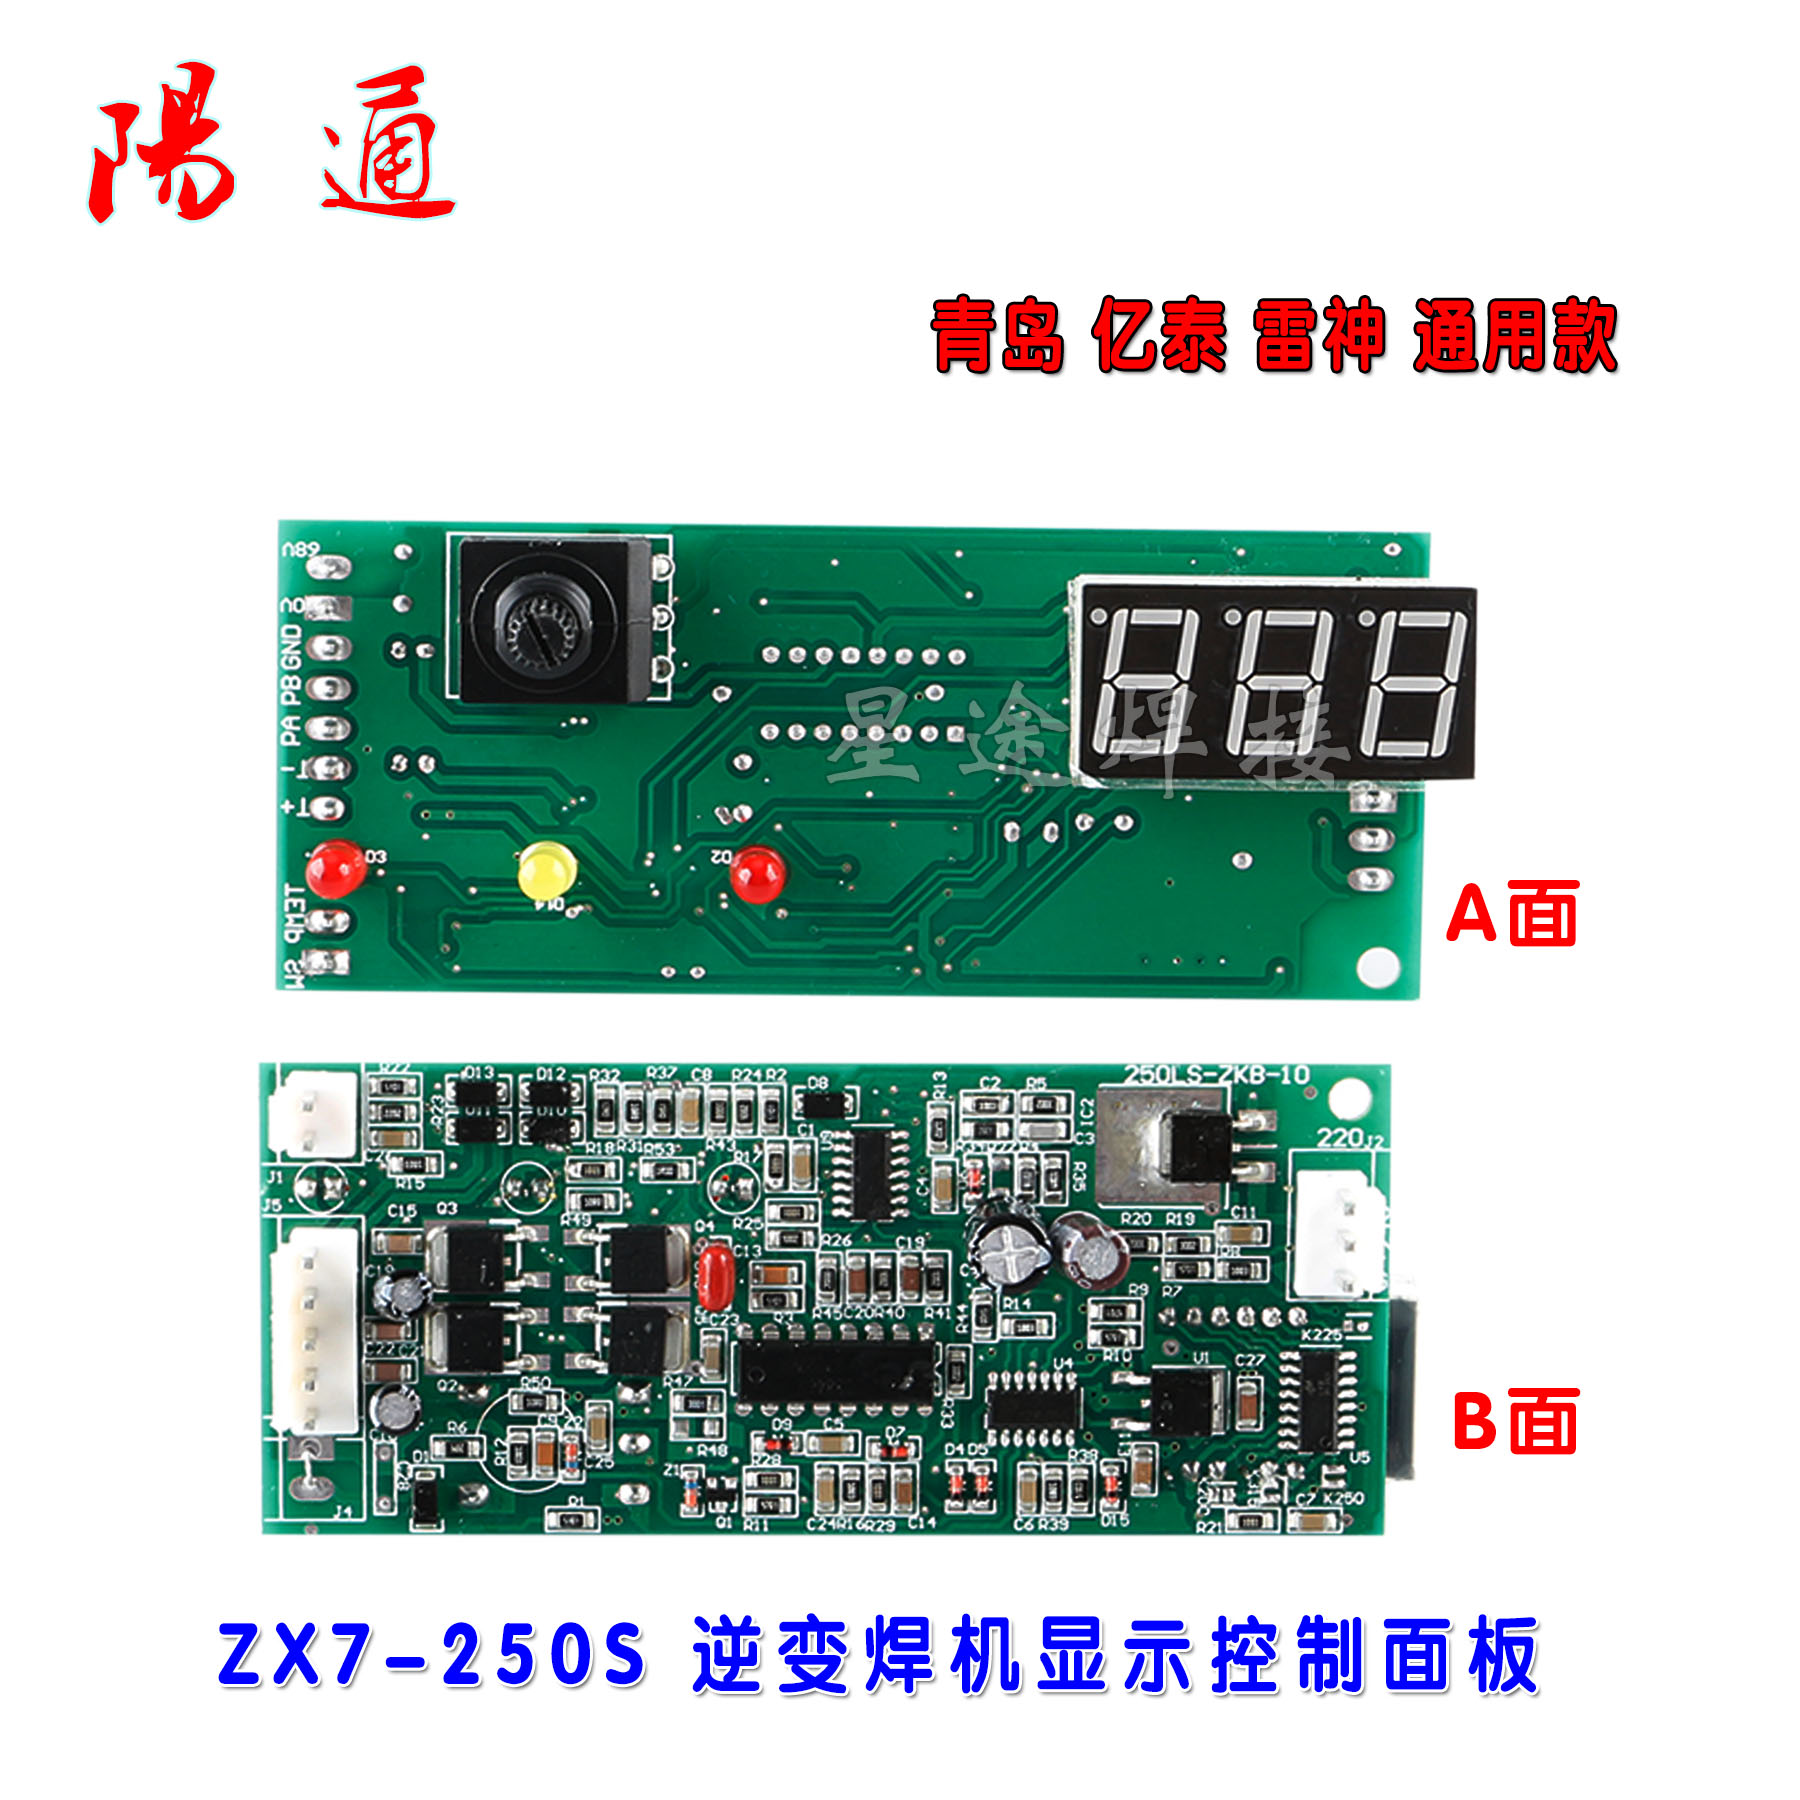 青岛 亿泰雷神通用款 ZX7 250S逆变焊机IGBT显示控制面板维修配件